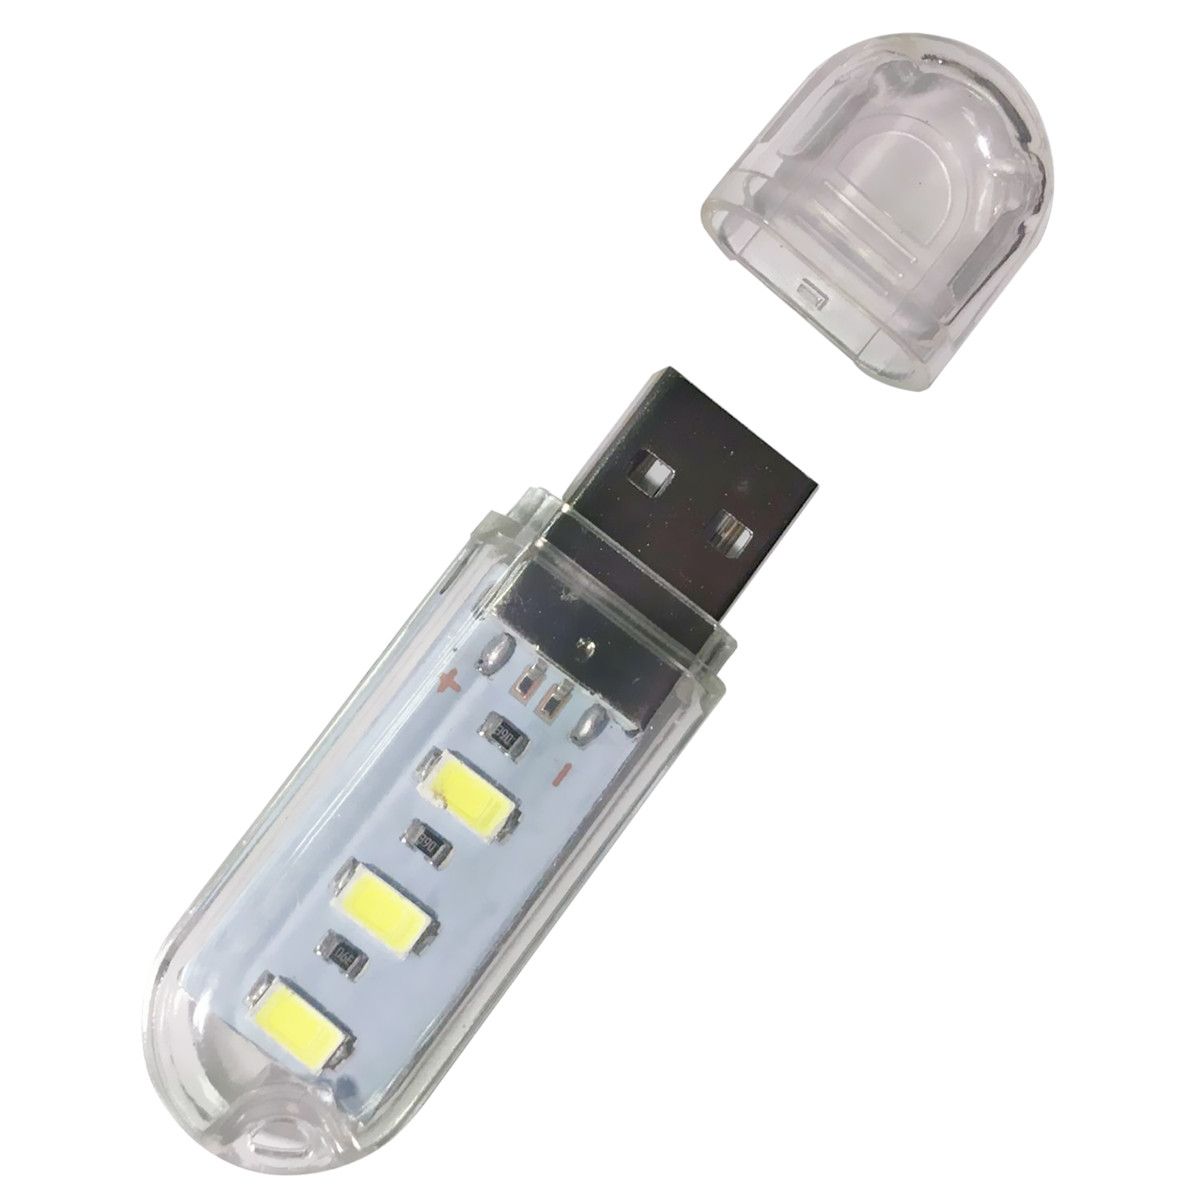 Portable-Mini-USB-Lighting-Night-Lamp-for-Computer-Power-Bank-1204909